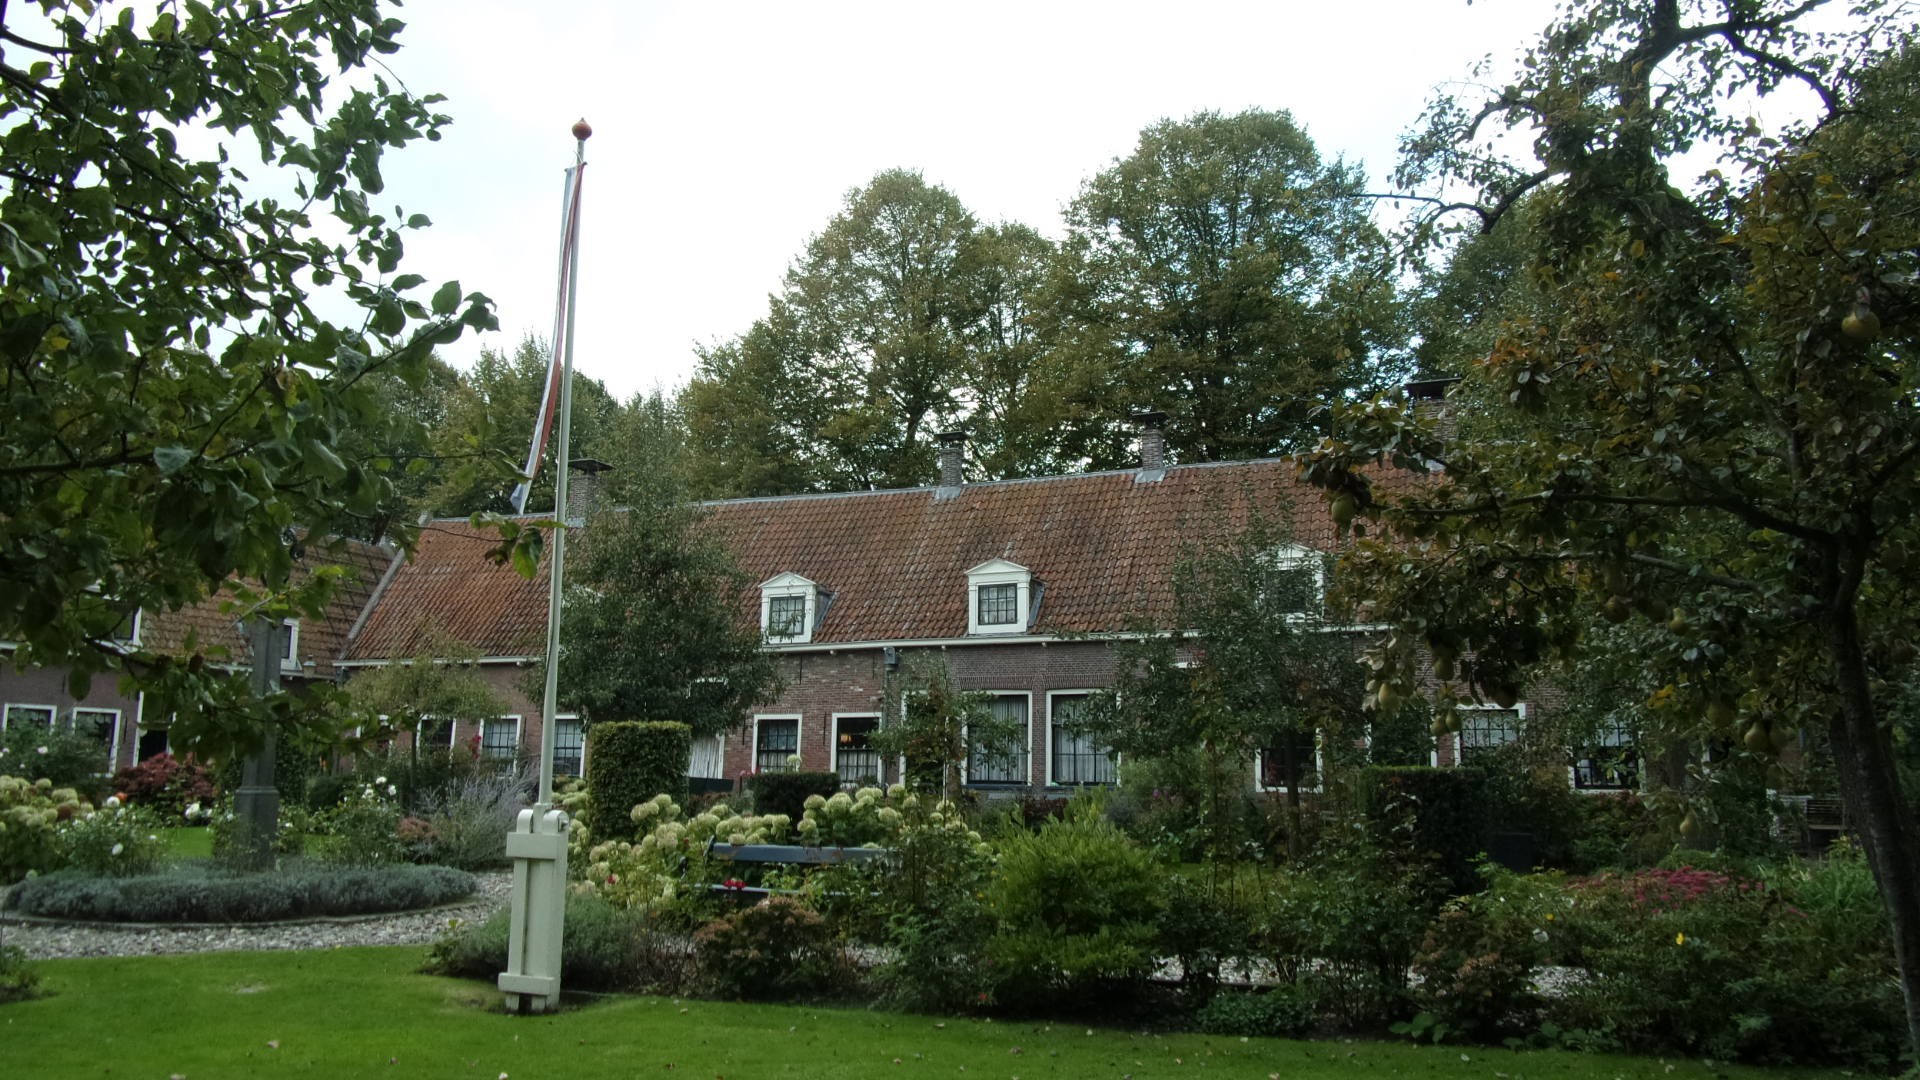 Один из старейших бегинажей в Нидерландах находится в небольшом северном городе Эдам, ему более 500 лет. сейчас здесь живут одинокие мужчины и женщины, за которыми ухаживают и которым помогают скрасить старость…<br/>
